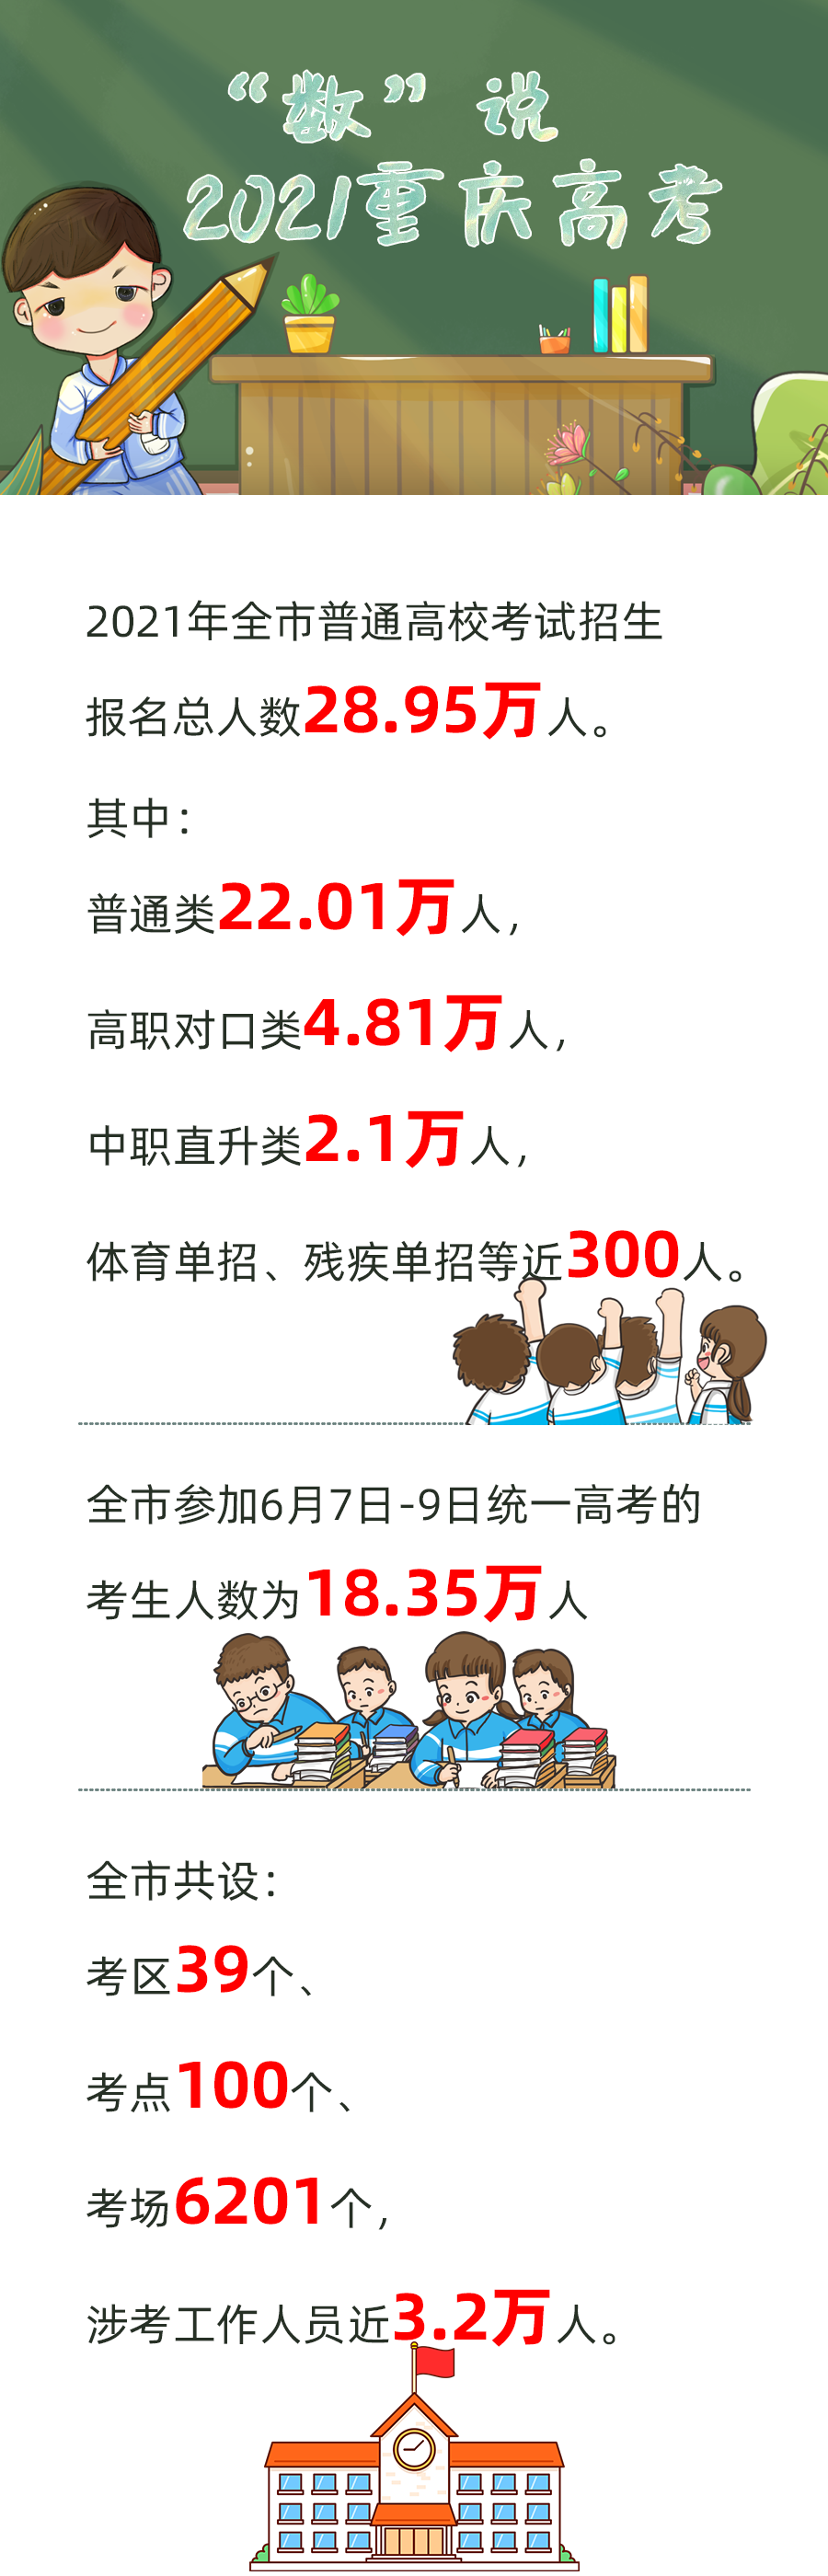 重庆2021年高考报名人数28.95万